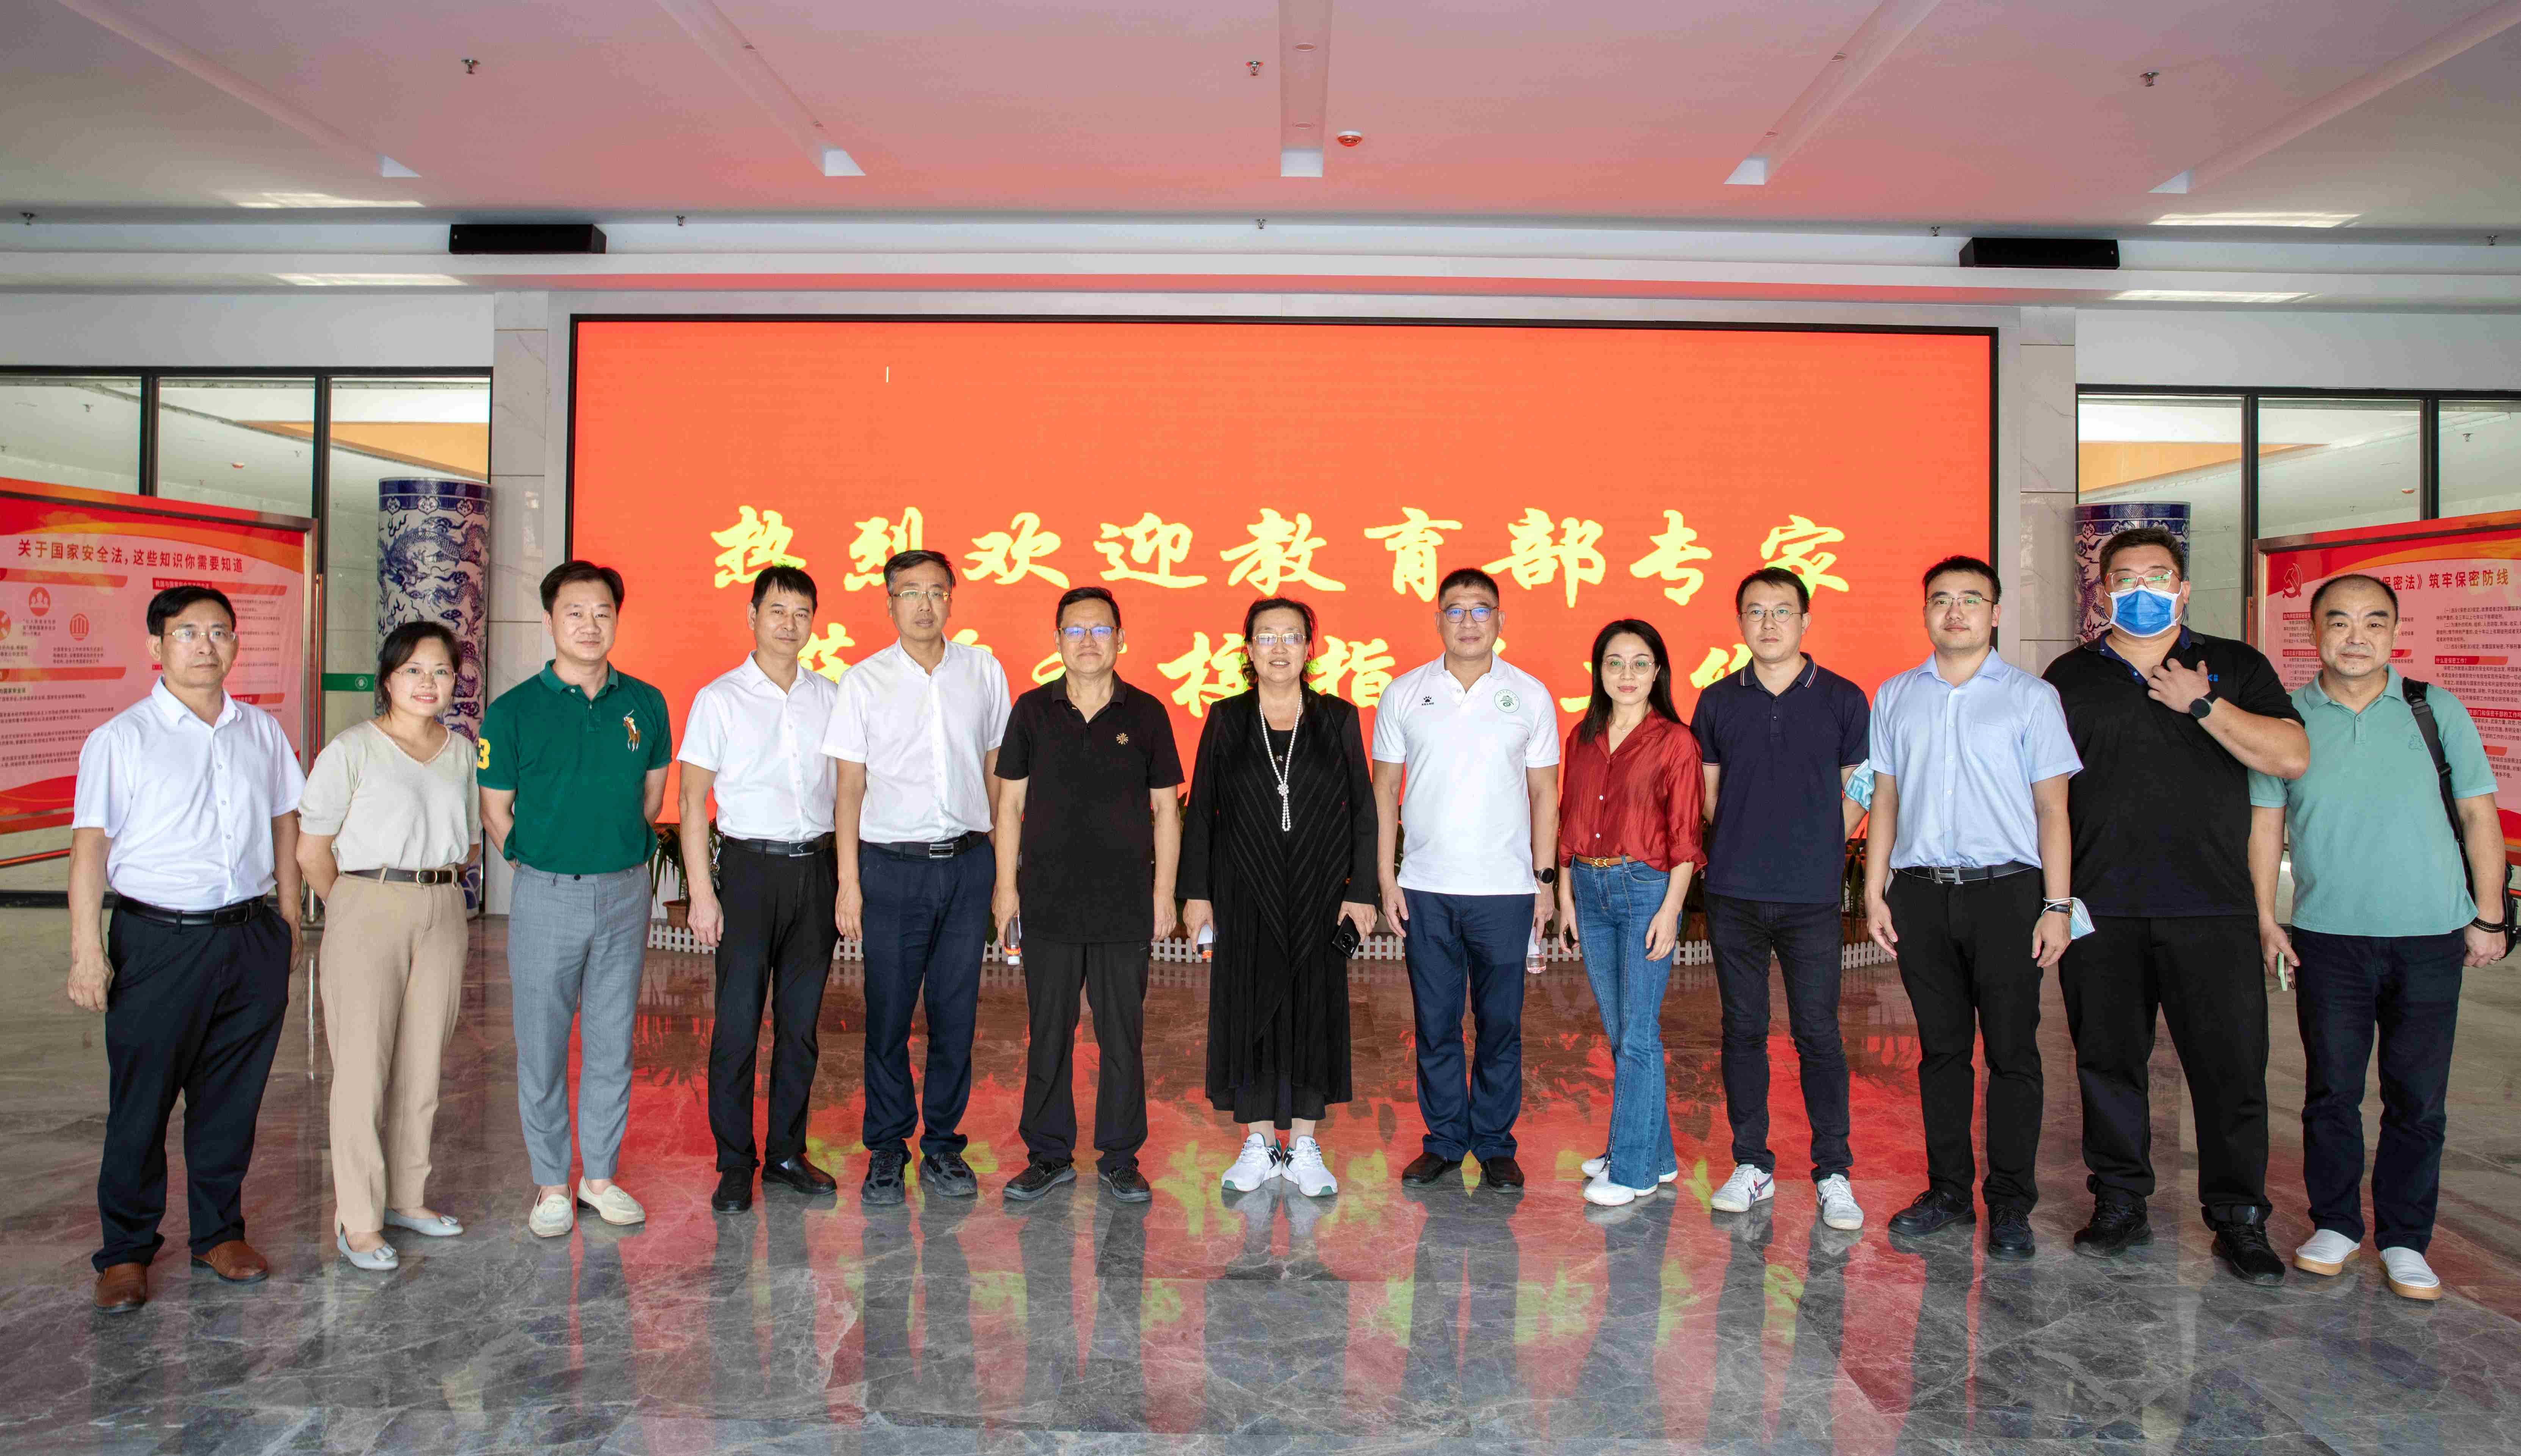 教育部科技发展中心专家组在宜春职业技术学院调研指导